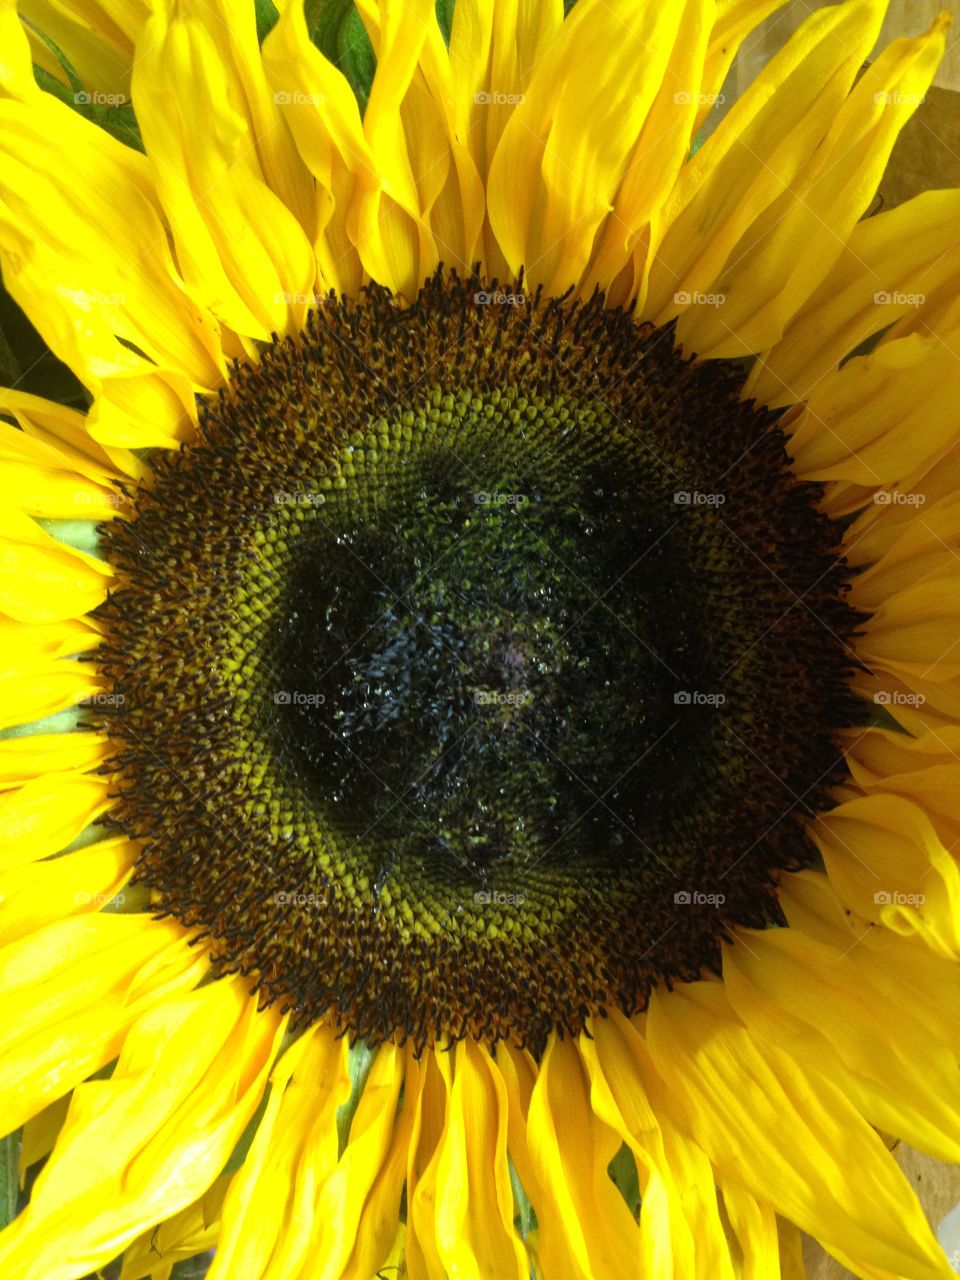 Close-up sunflower flower